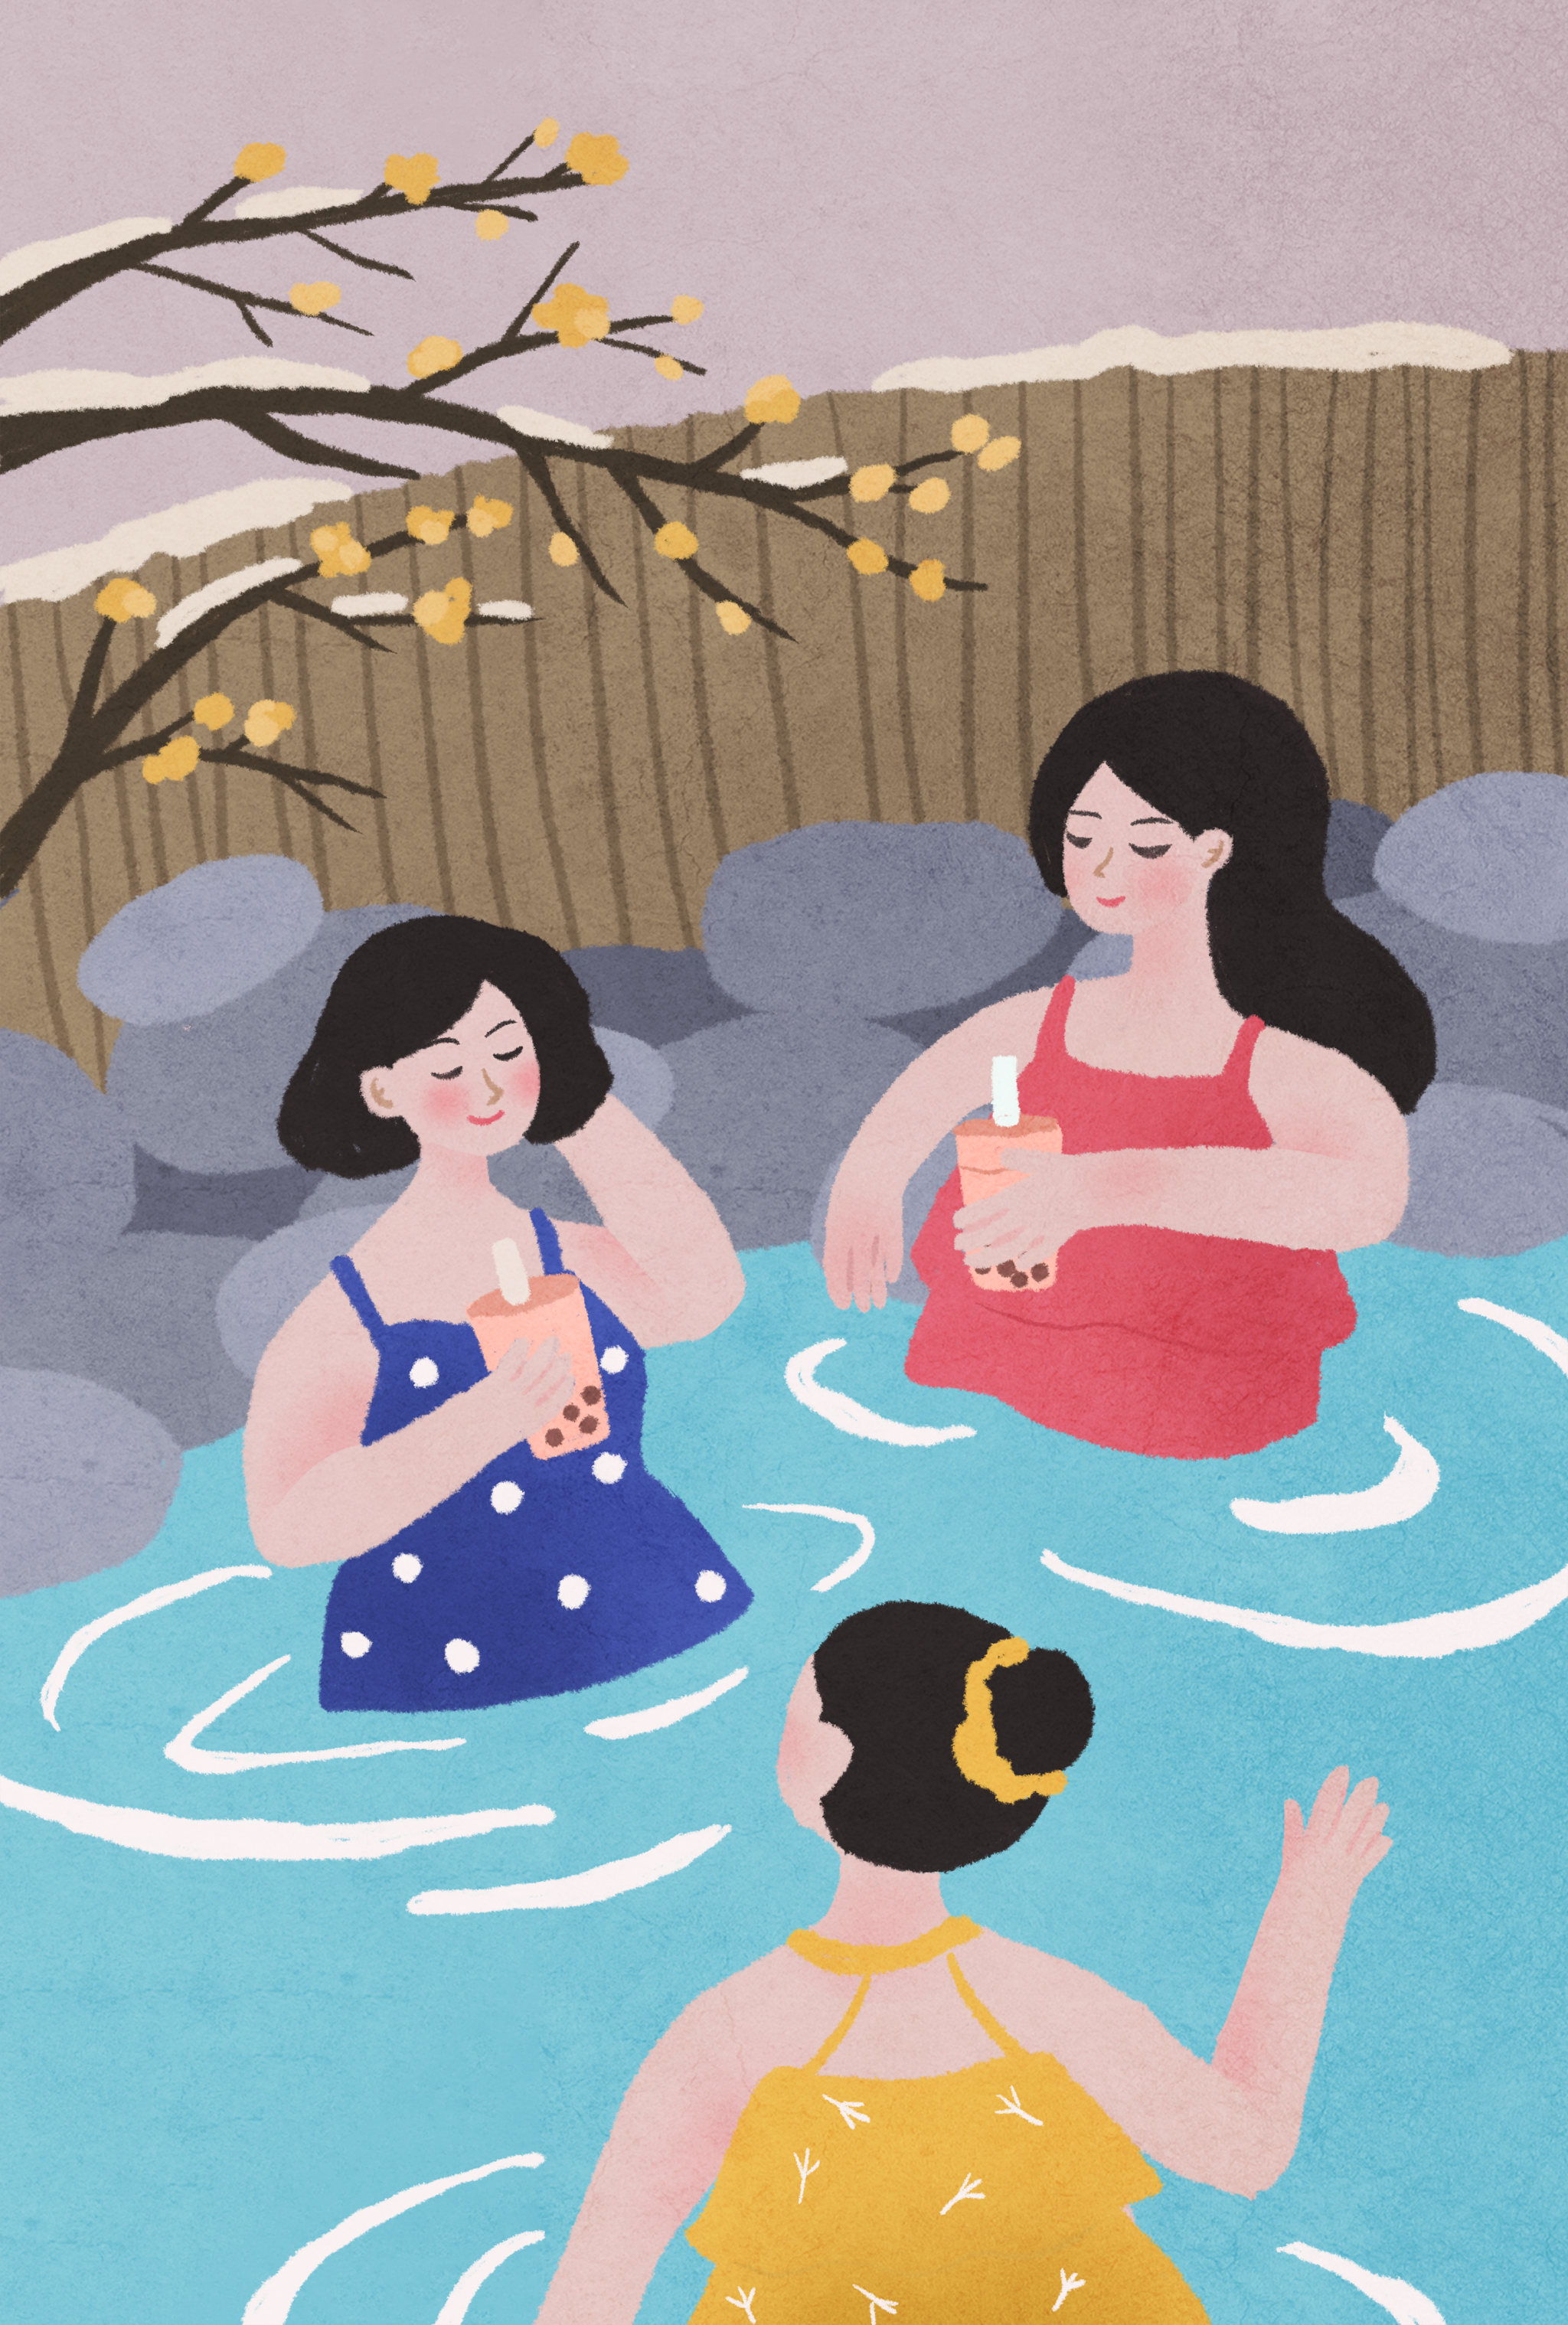 年轻女人在冬天泡温泉喝奶茶的纹理插画